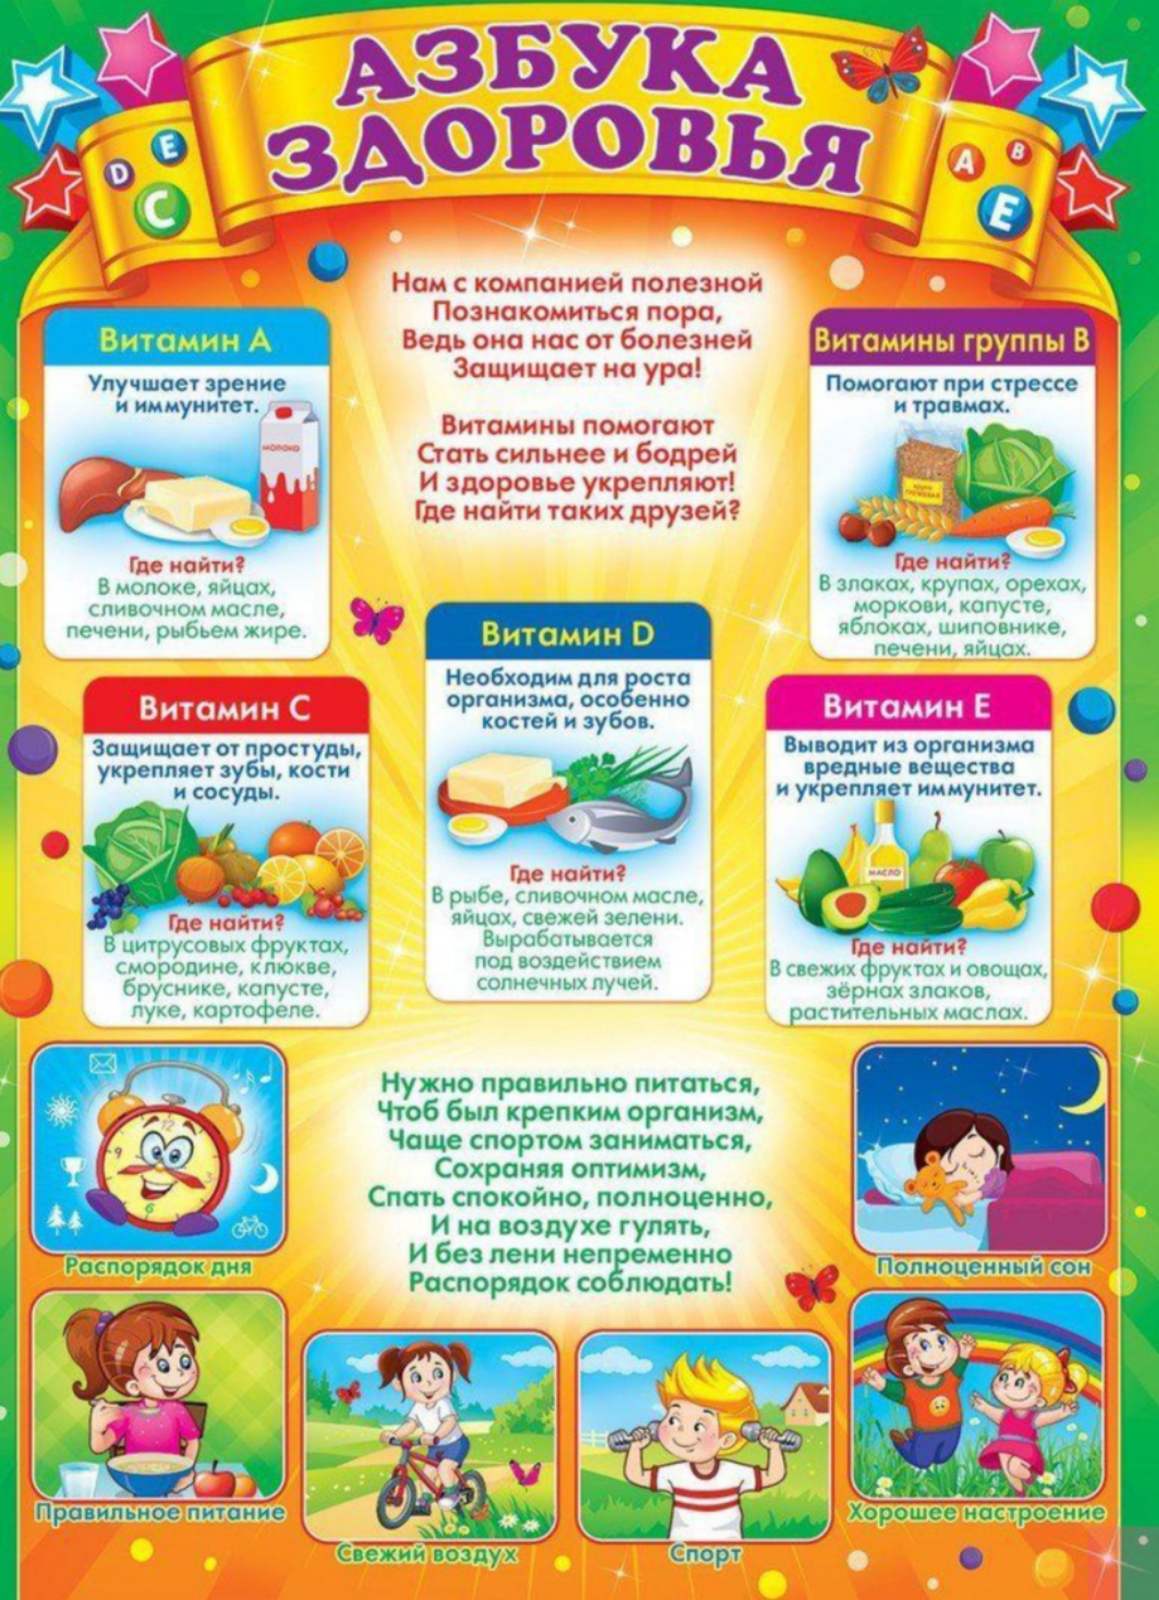 Статья день здоровья в детском саду. Азбука здоровья. Уголок здоровья в детском саду. Материал для уголка здоровья. Плакаты для детского сада.